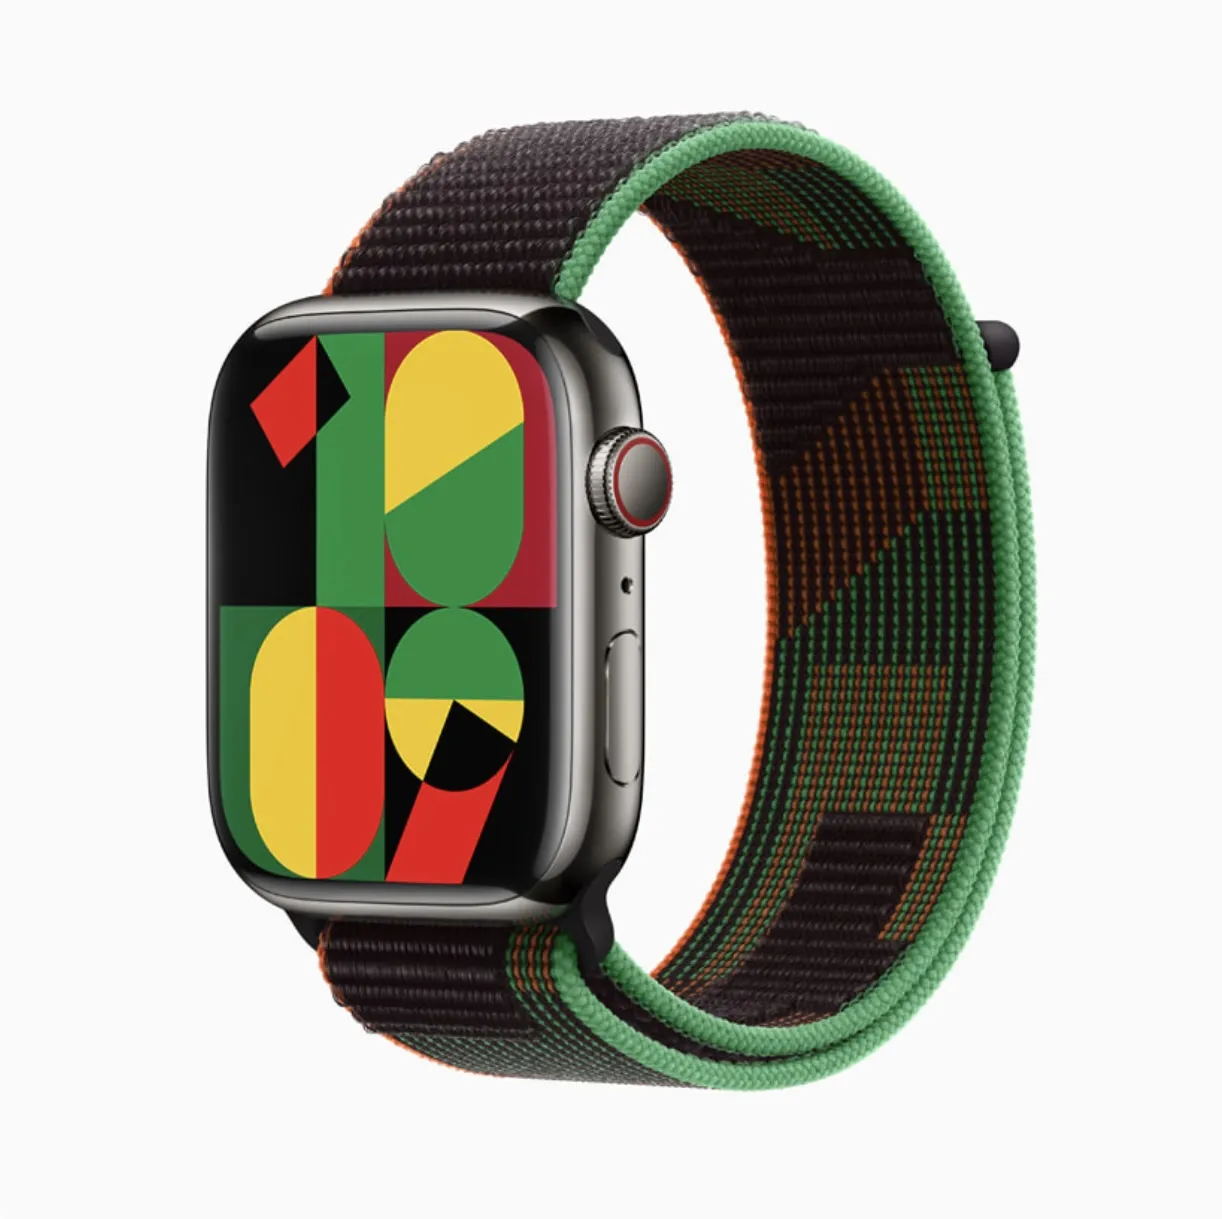 Новый циферблат Apple Watch Unity Mosaic появится на Apple Watch с watchOS 9.3